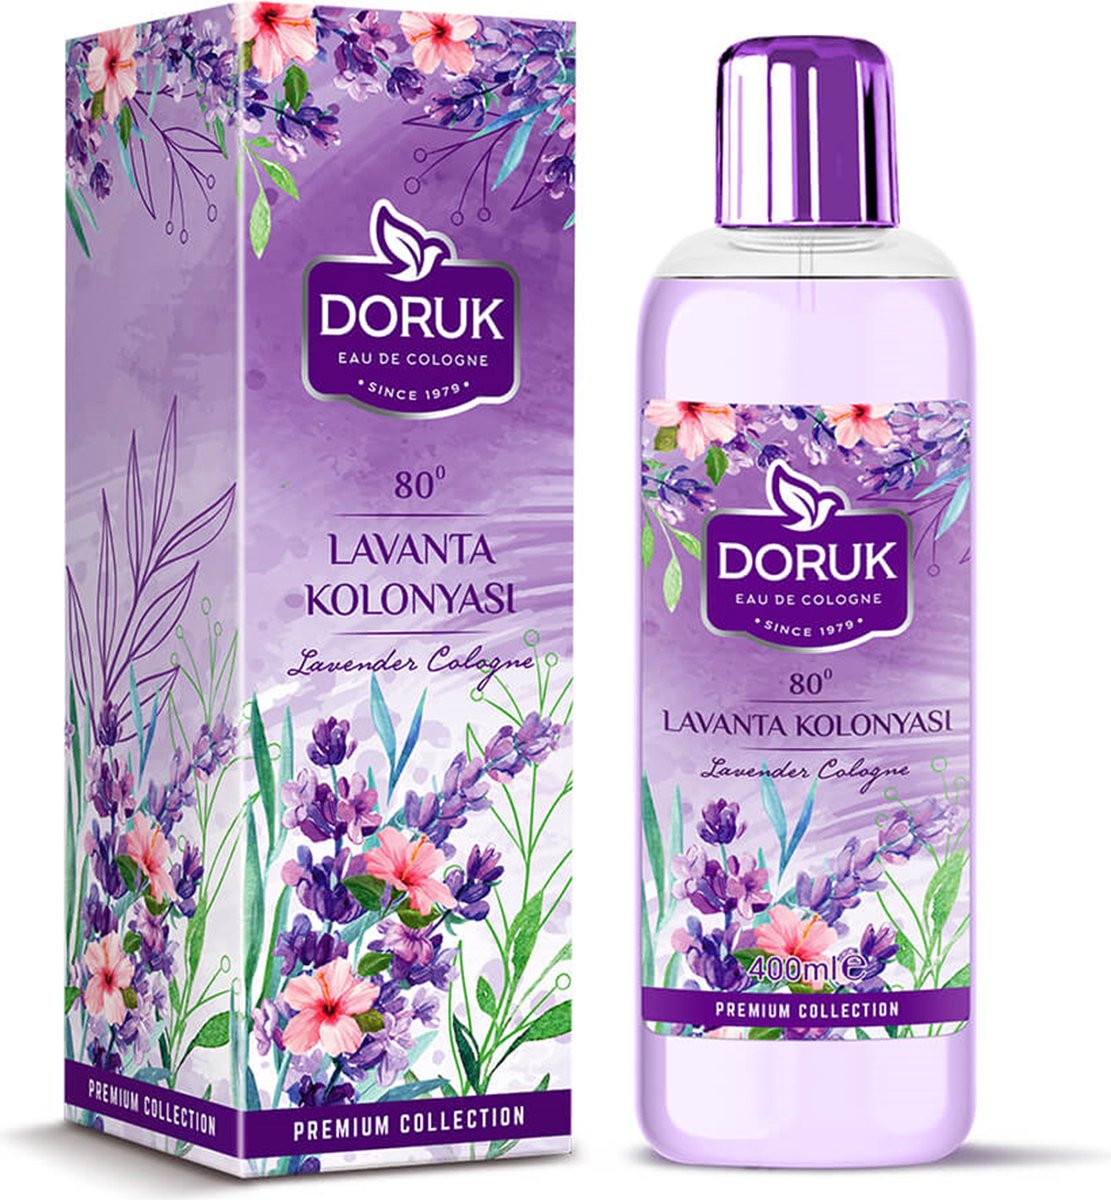 Doruk - Eau de cologne 400ml - 80° alcohol - lavendel cologne - Optimale desinfectie van handen